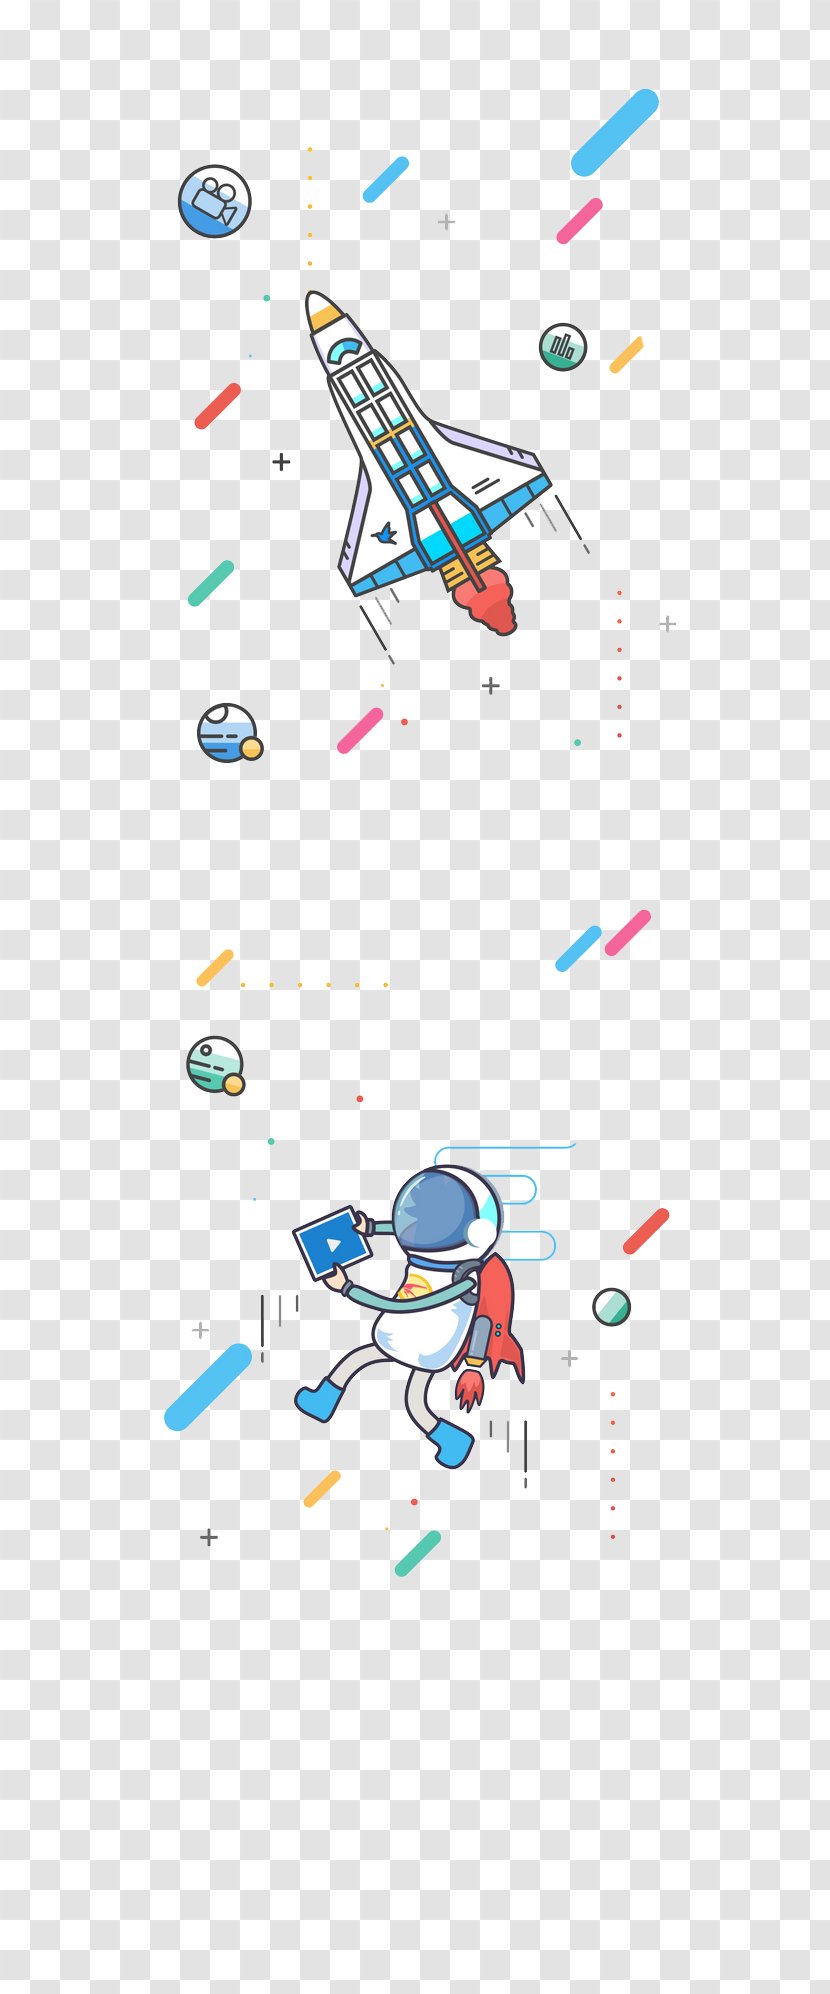 Cartoon Rocket Illustration - Designer - Background Transparent PNG